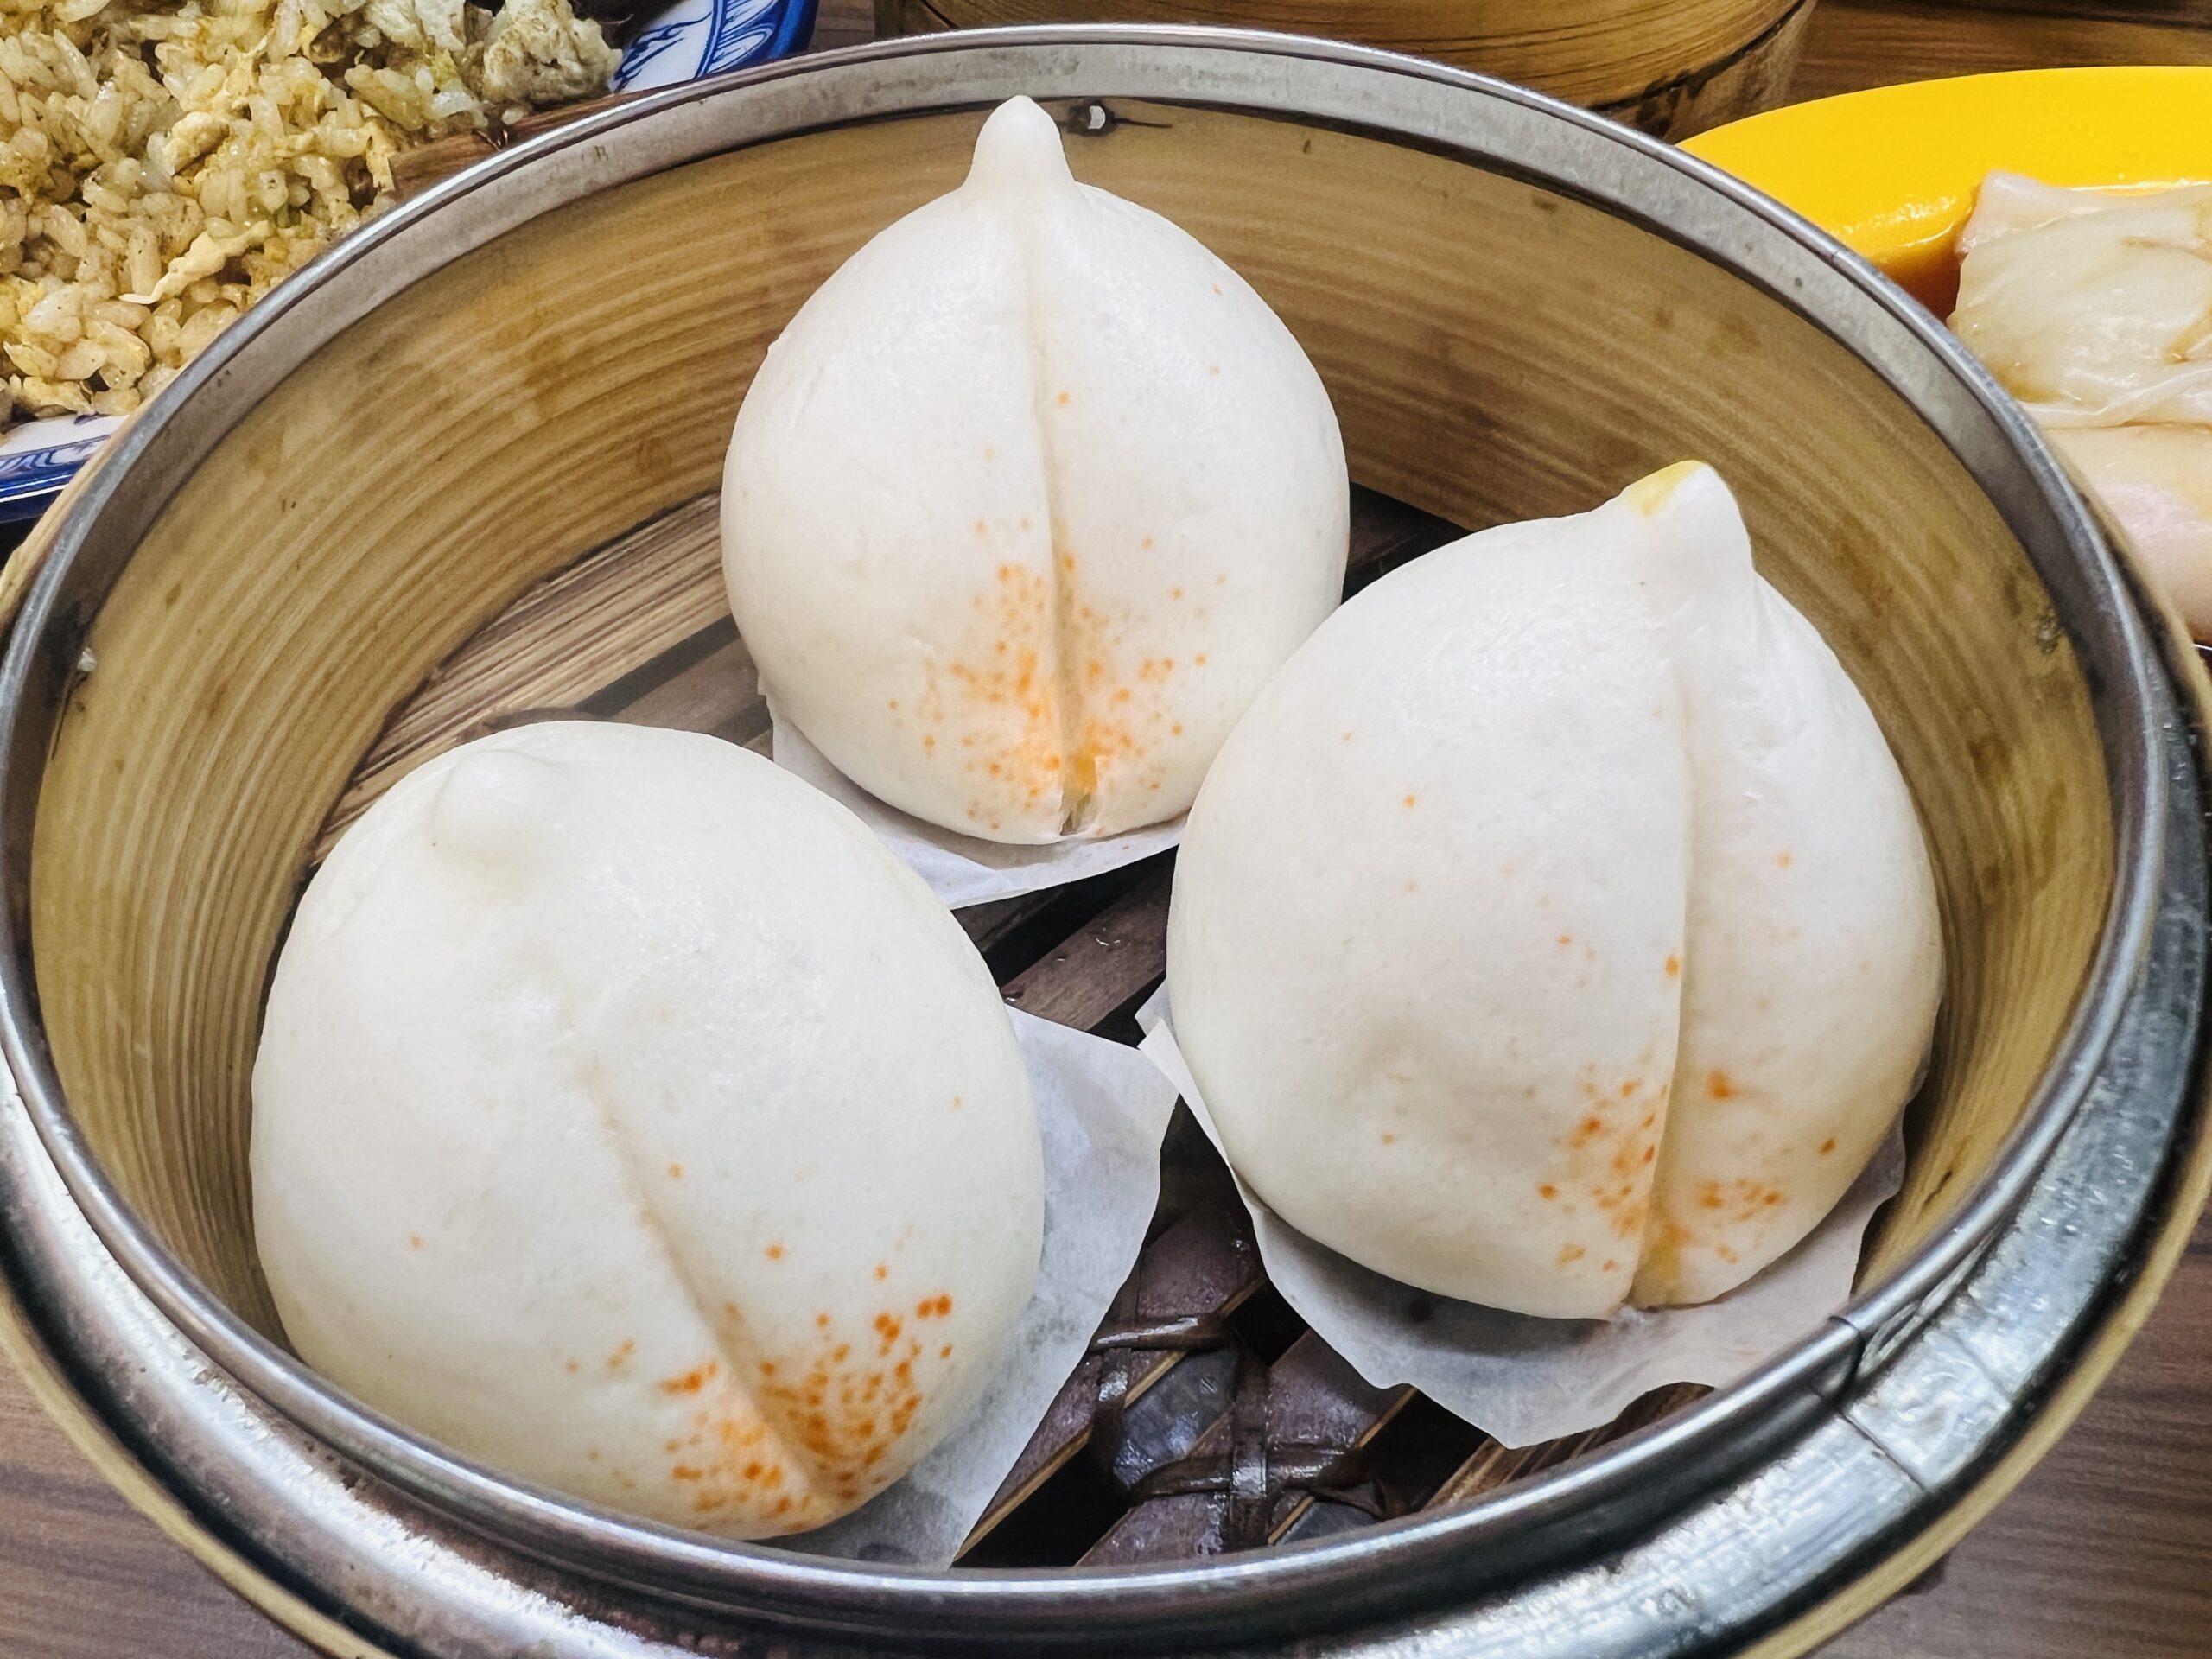 Hong Kong Dim Sum Shop - Salted Egg Lotus Seed Paste Bun